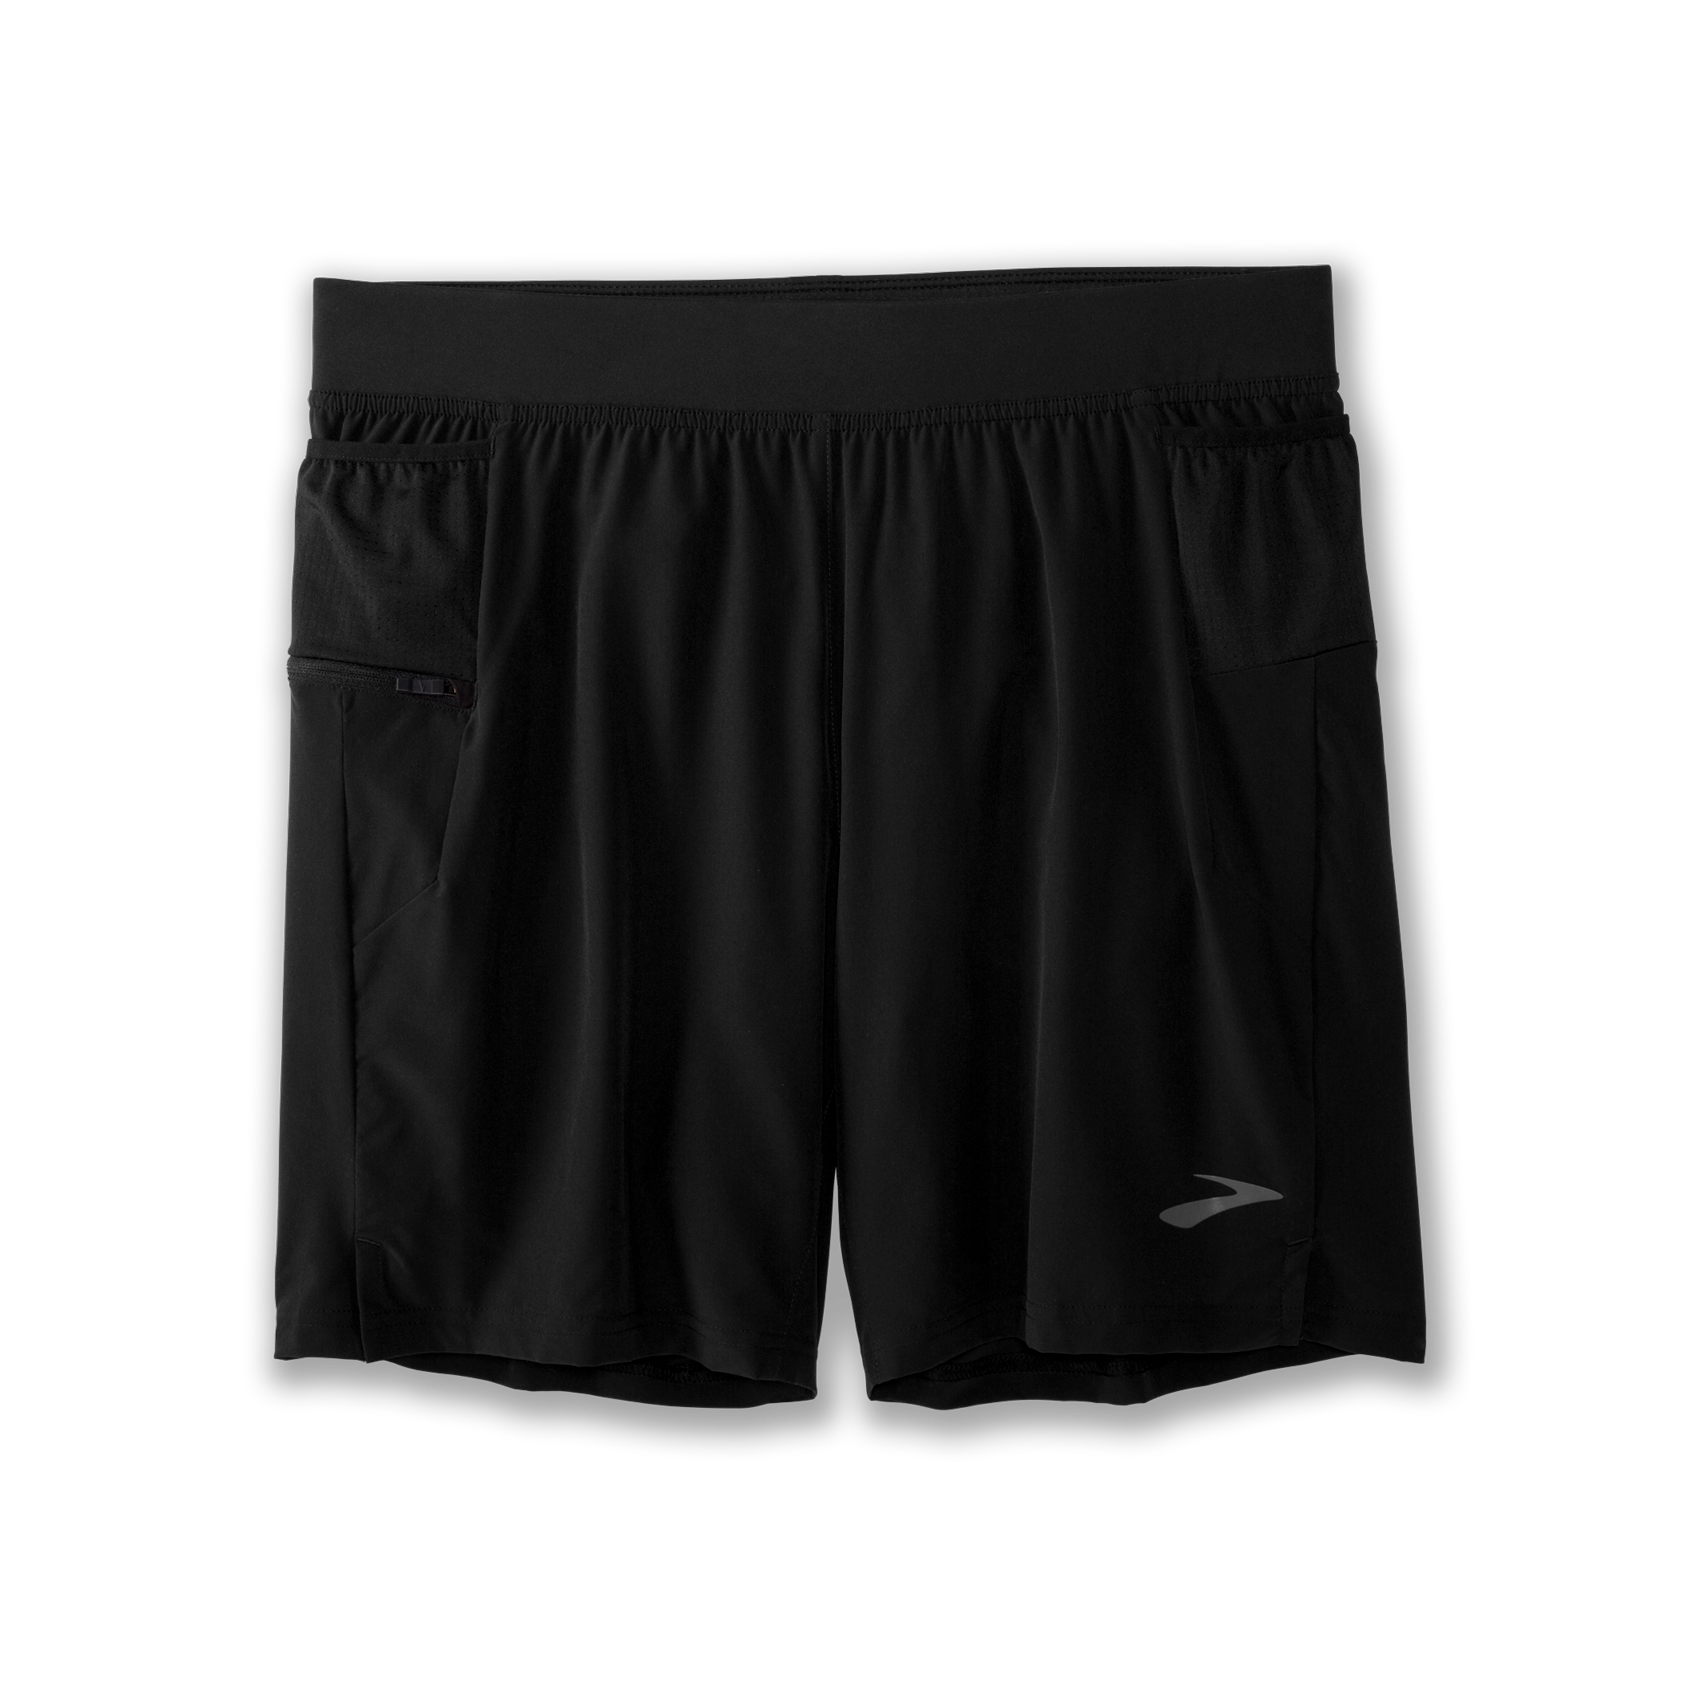 Nike AeroSwift Women's Tight Running Shorts Black, Black, Medium, Shorts -   Canada